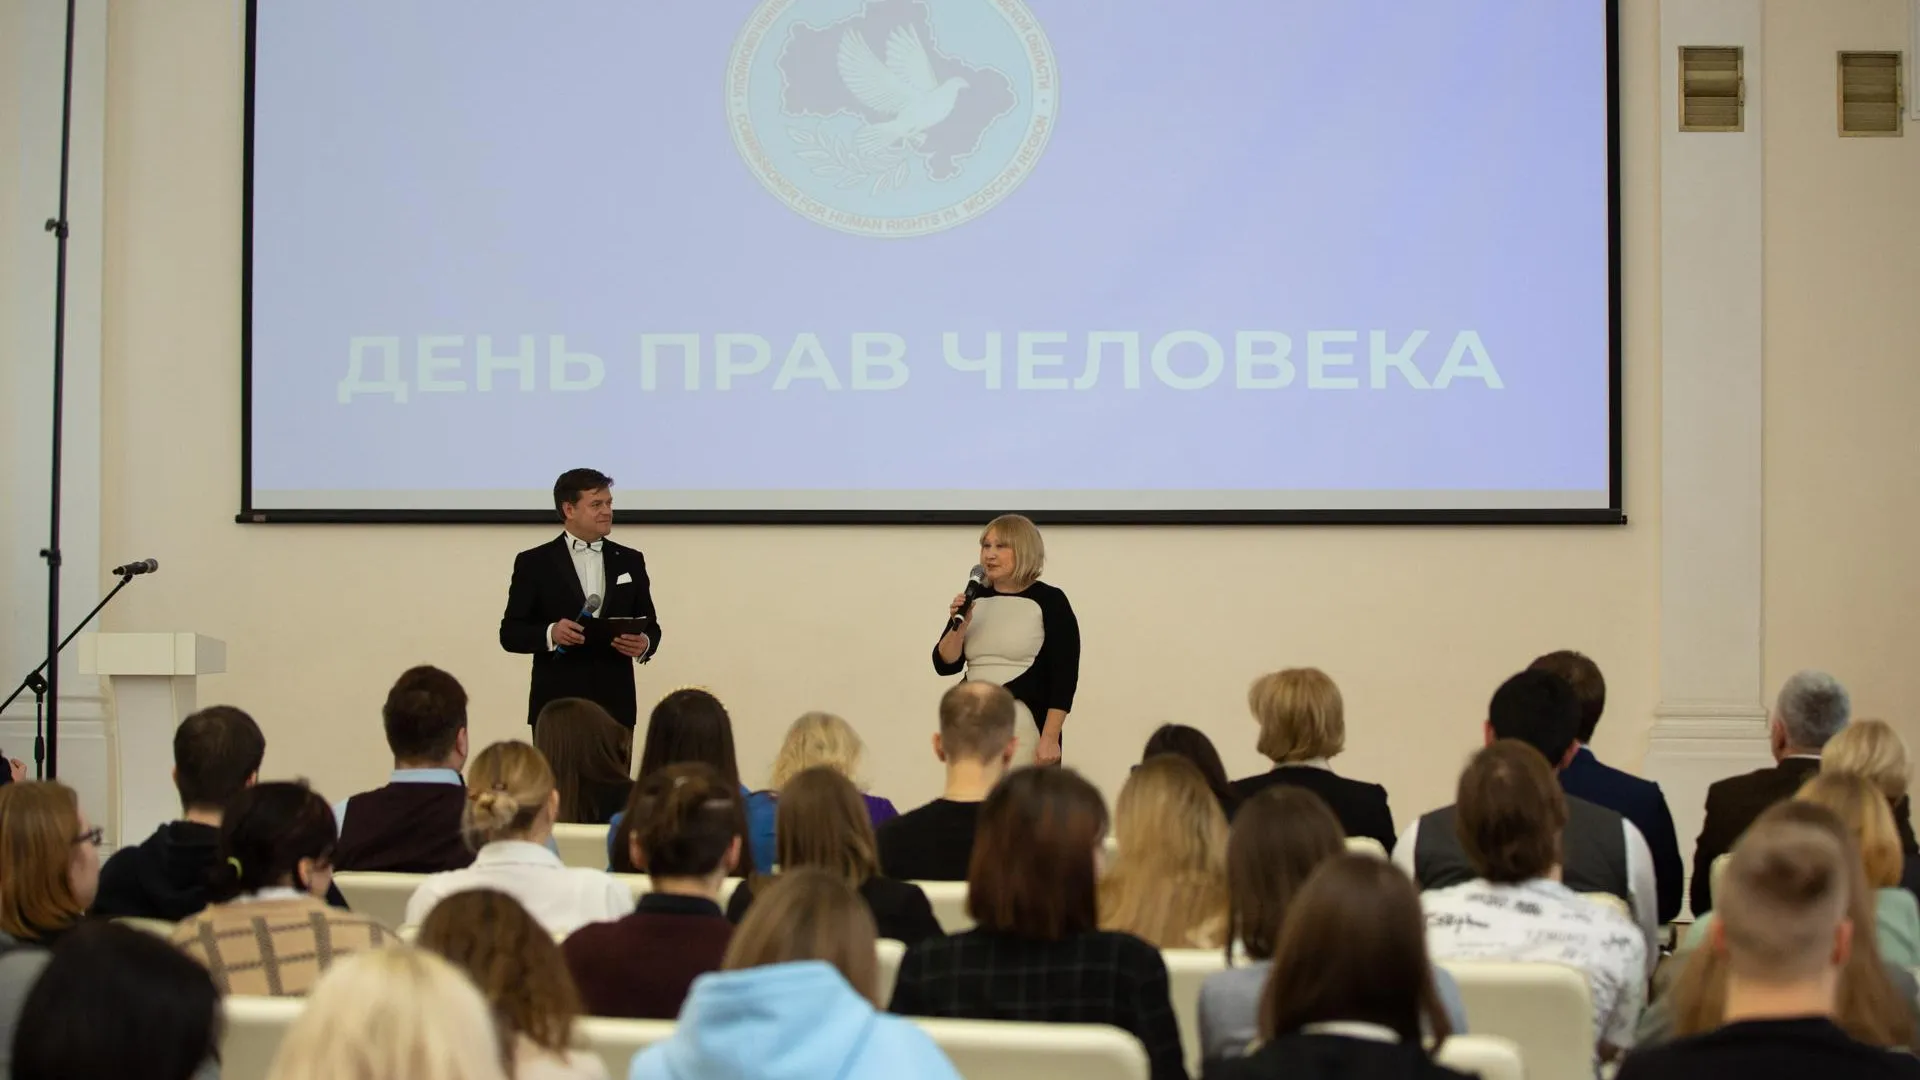 Системный администратор из Егорьевска получил Знак отличия от омбудсмена Ирины Фаевской